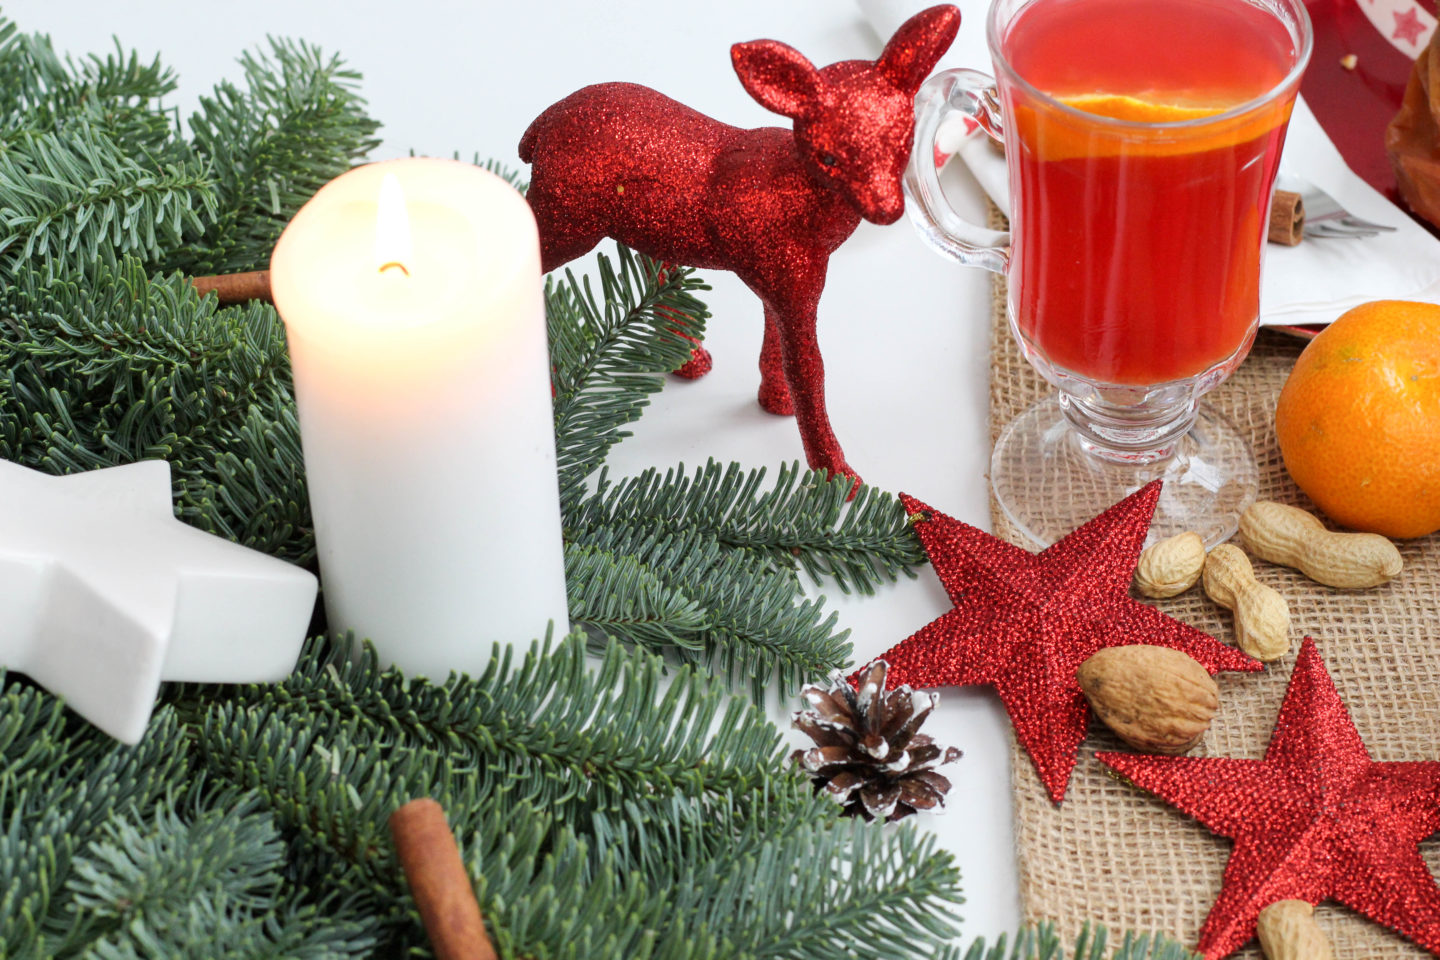 vegan-nikolaus-krampus-weihnachten-bratapfel-germteig-perchten-nuesse-christmas-soulfood-homespa-plantbased-8-von-35